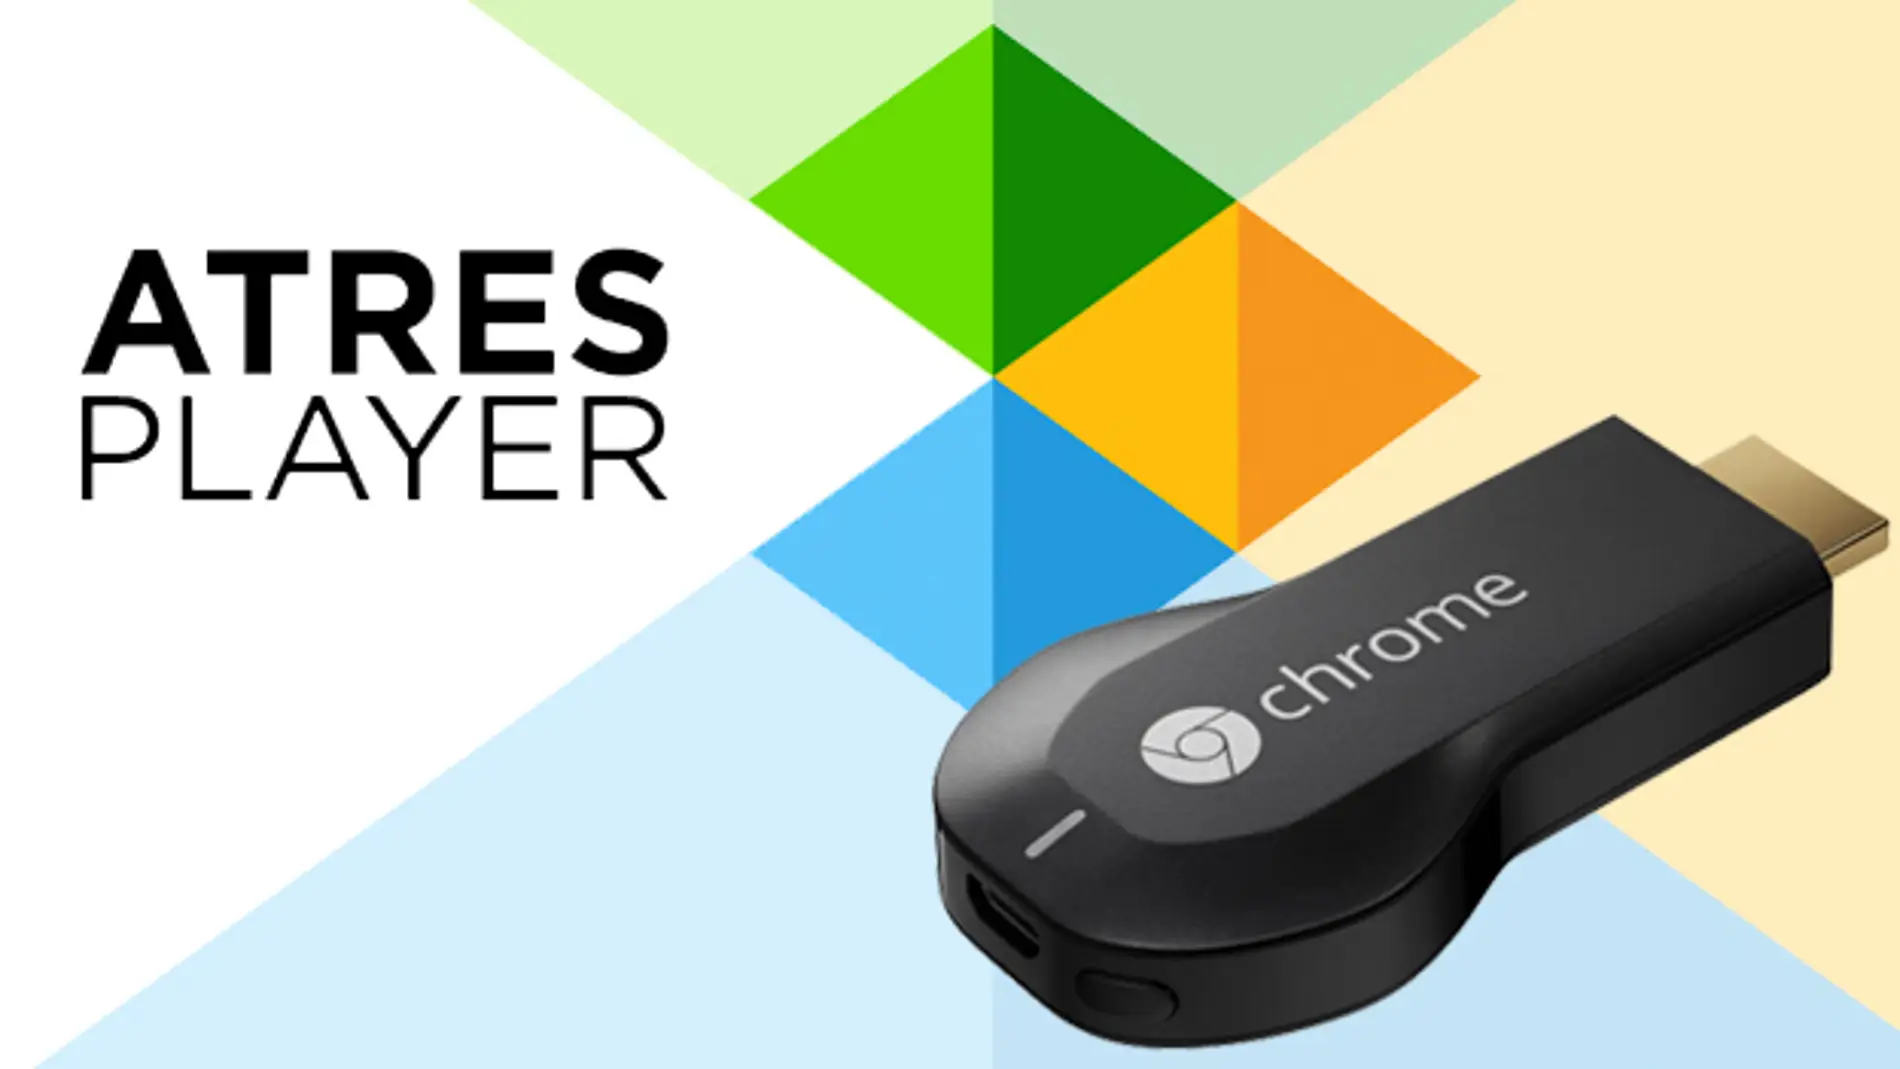 La app de Atresplayer incorpora compatibilidad con el Chromecast de Google